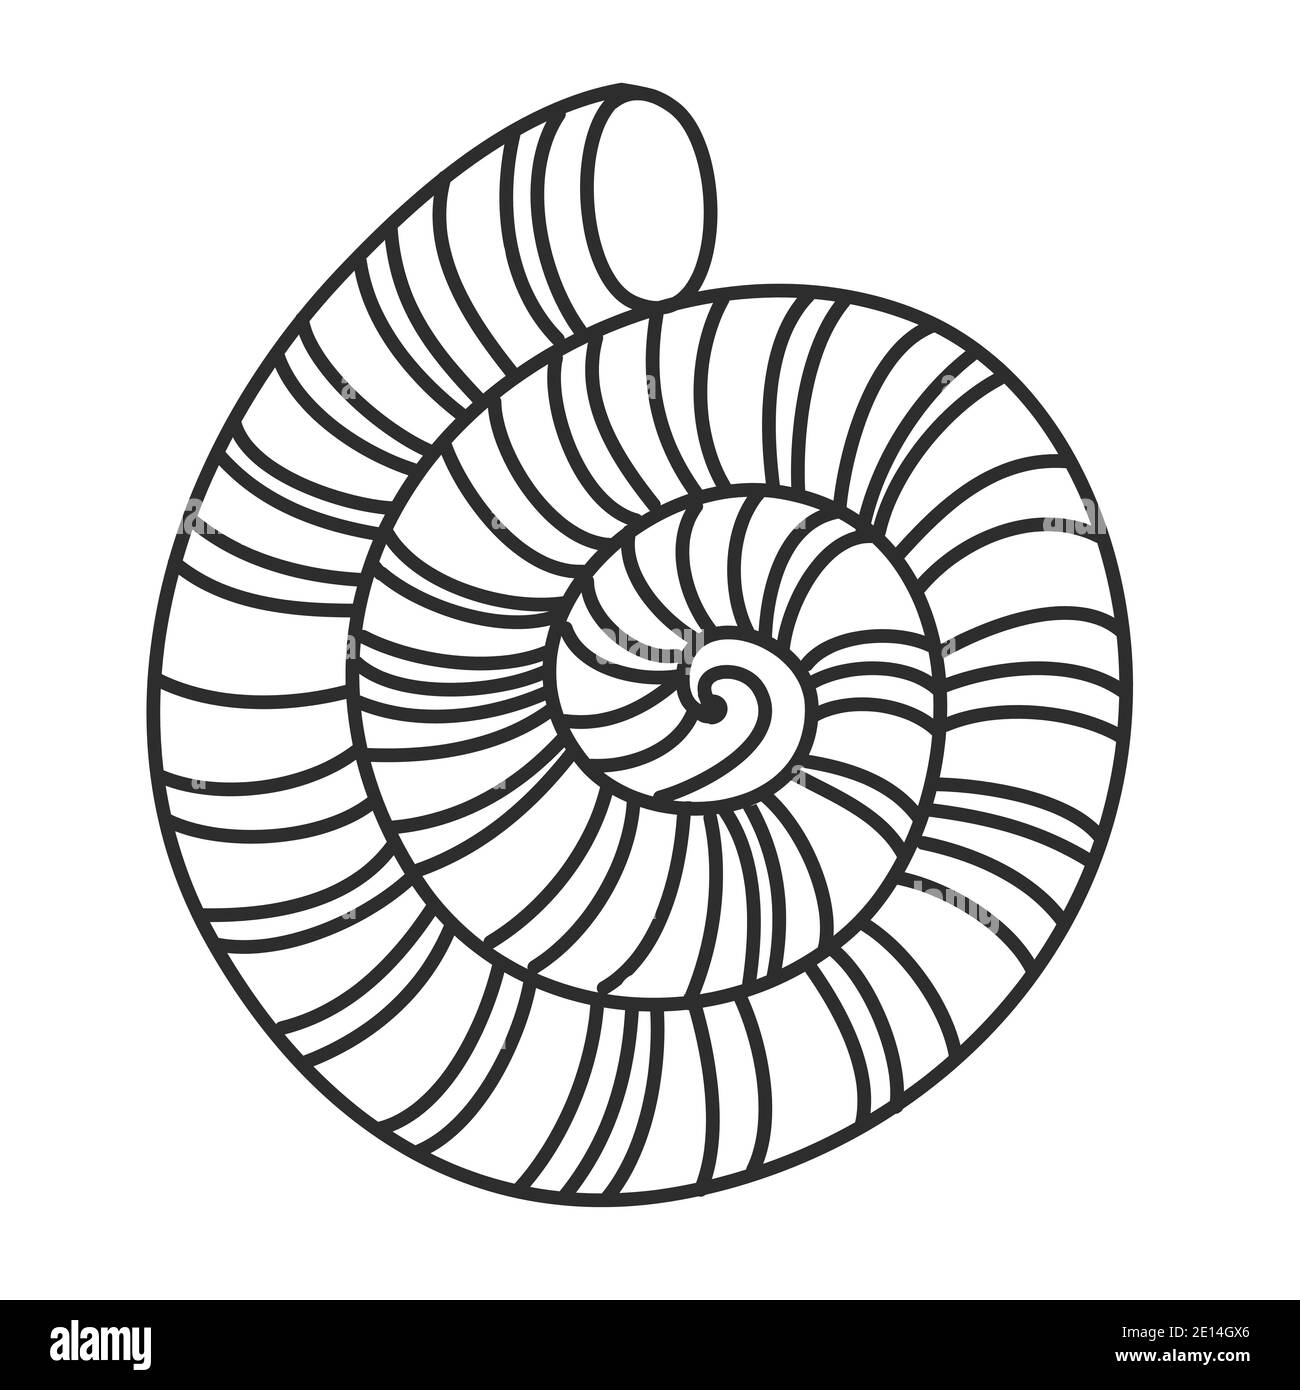 Grand coquillage, forme ronde avec perles, coquille de mollusque calcaire, illustration vectorielle noire et blanche des caniches dessinées à la main Illustration de Vecteur